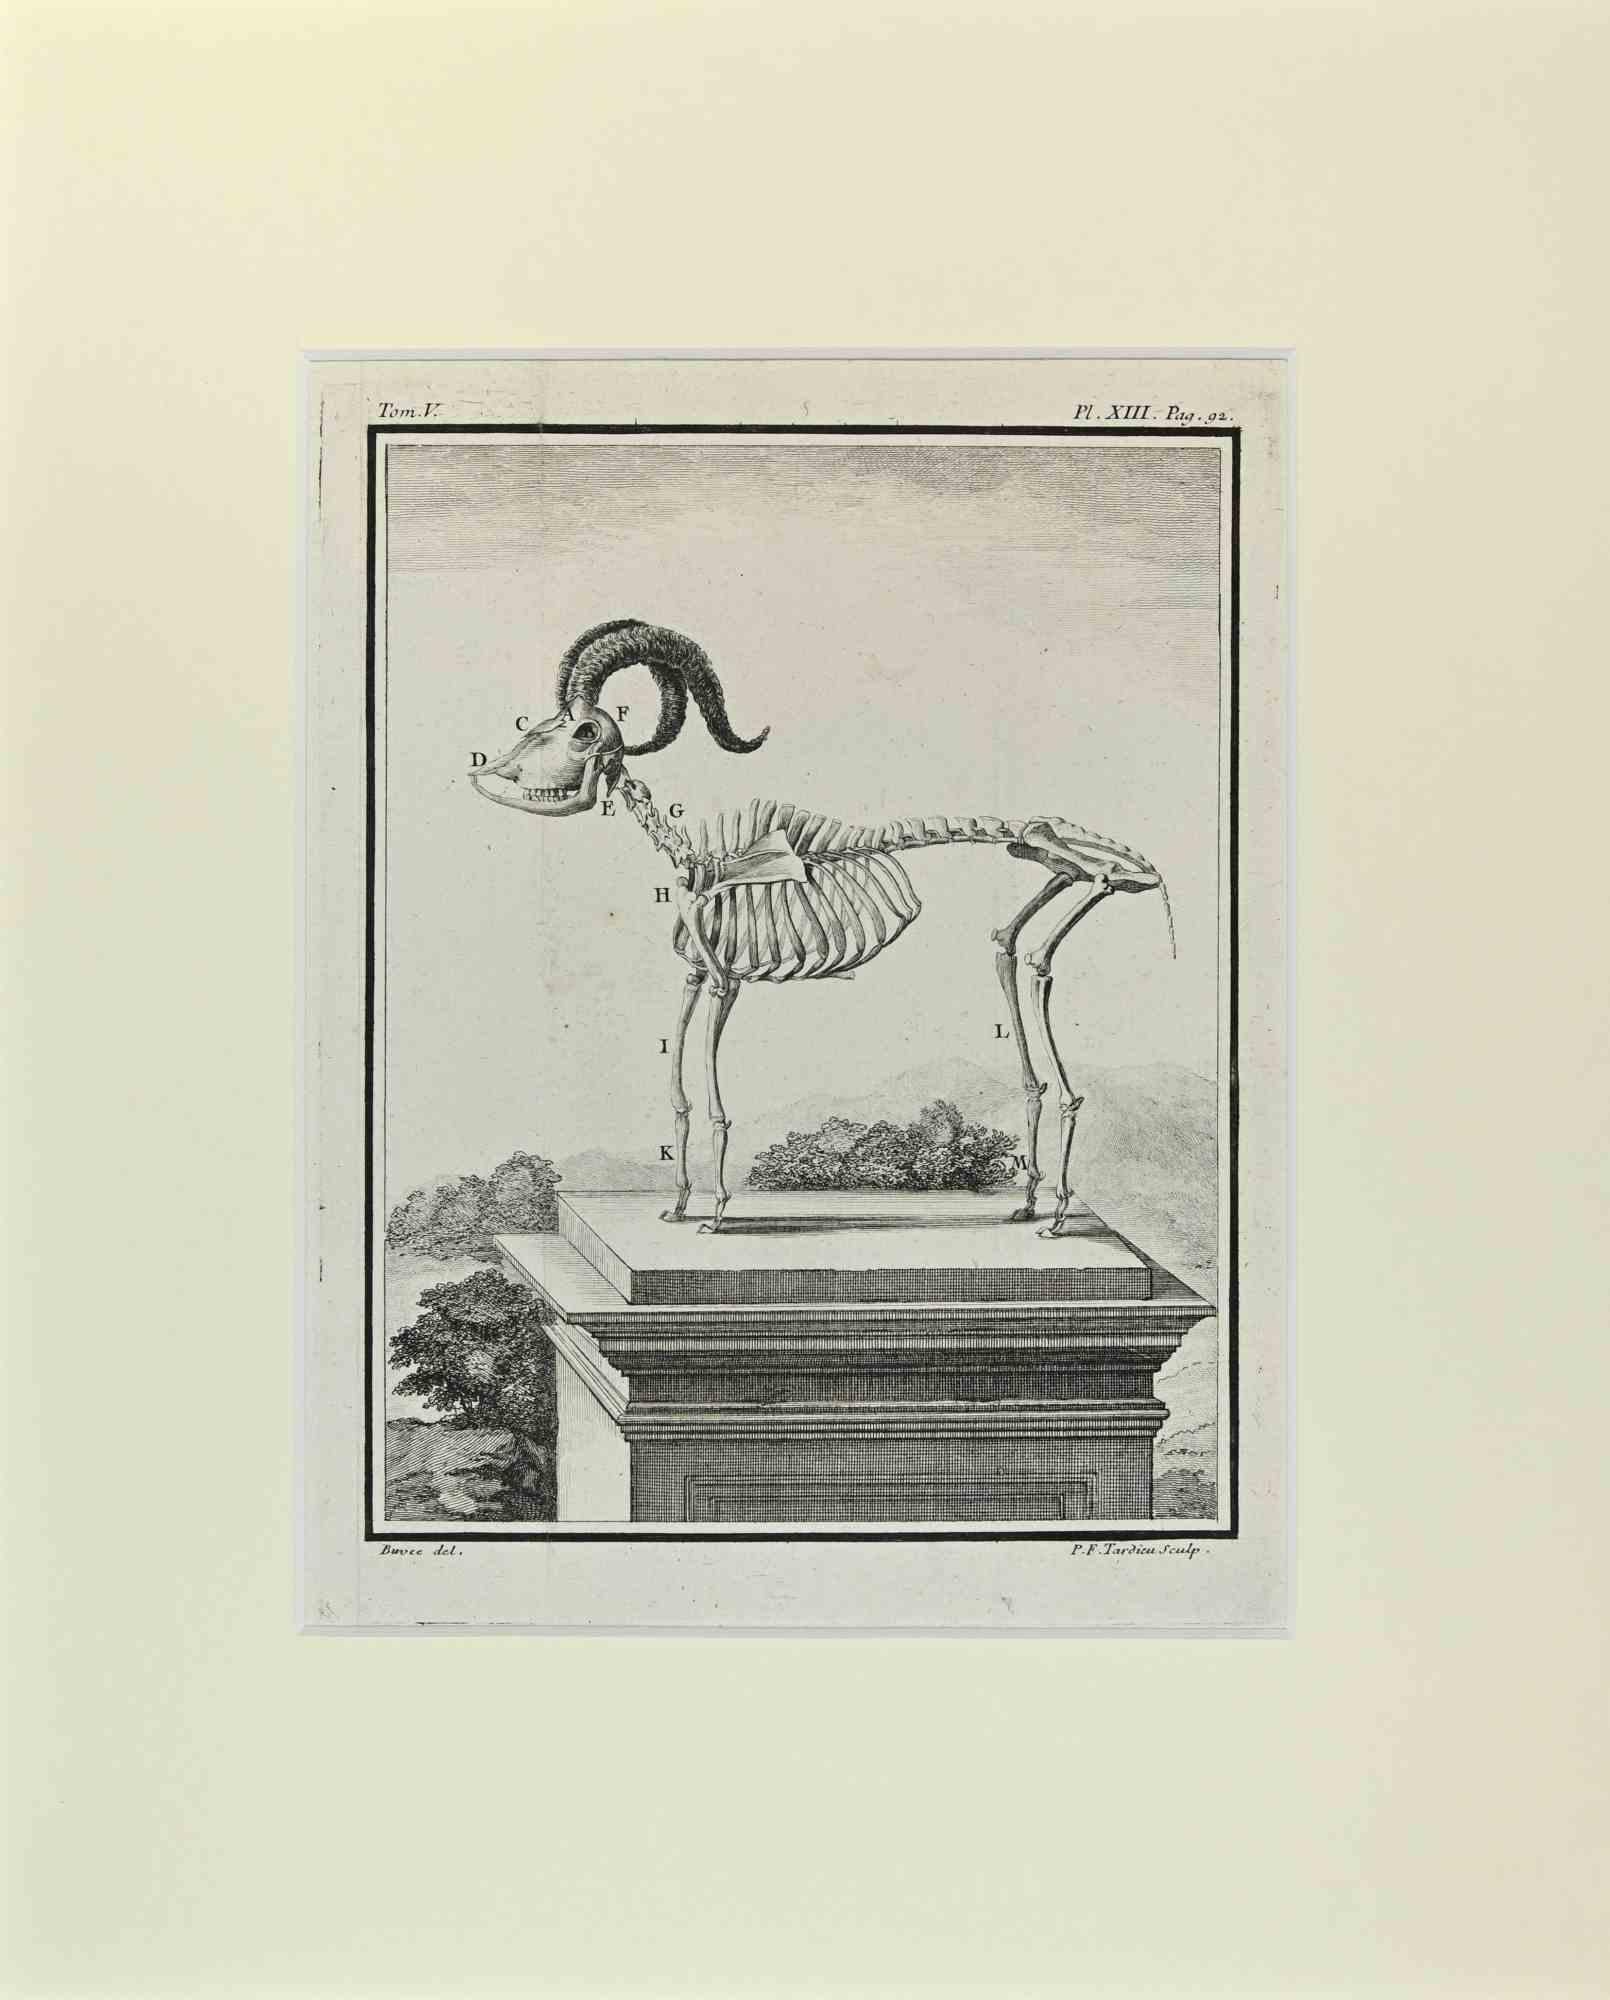 Mouflon Wild Sheep est une œuvre d'art réalisée par Buvée l'Américain en 1771.  

Gravure à l'eau-forte B./W. sur papier ivoire. Signé sur la plaque dans la marge inférieure gauche.

L'œuvre est collée sur du carton. Dimensions totales : 35x28